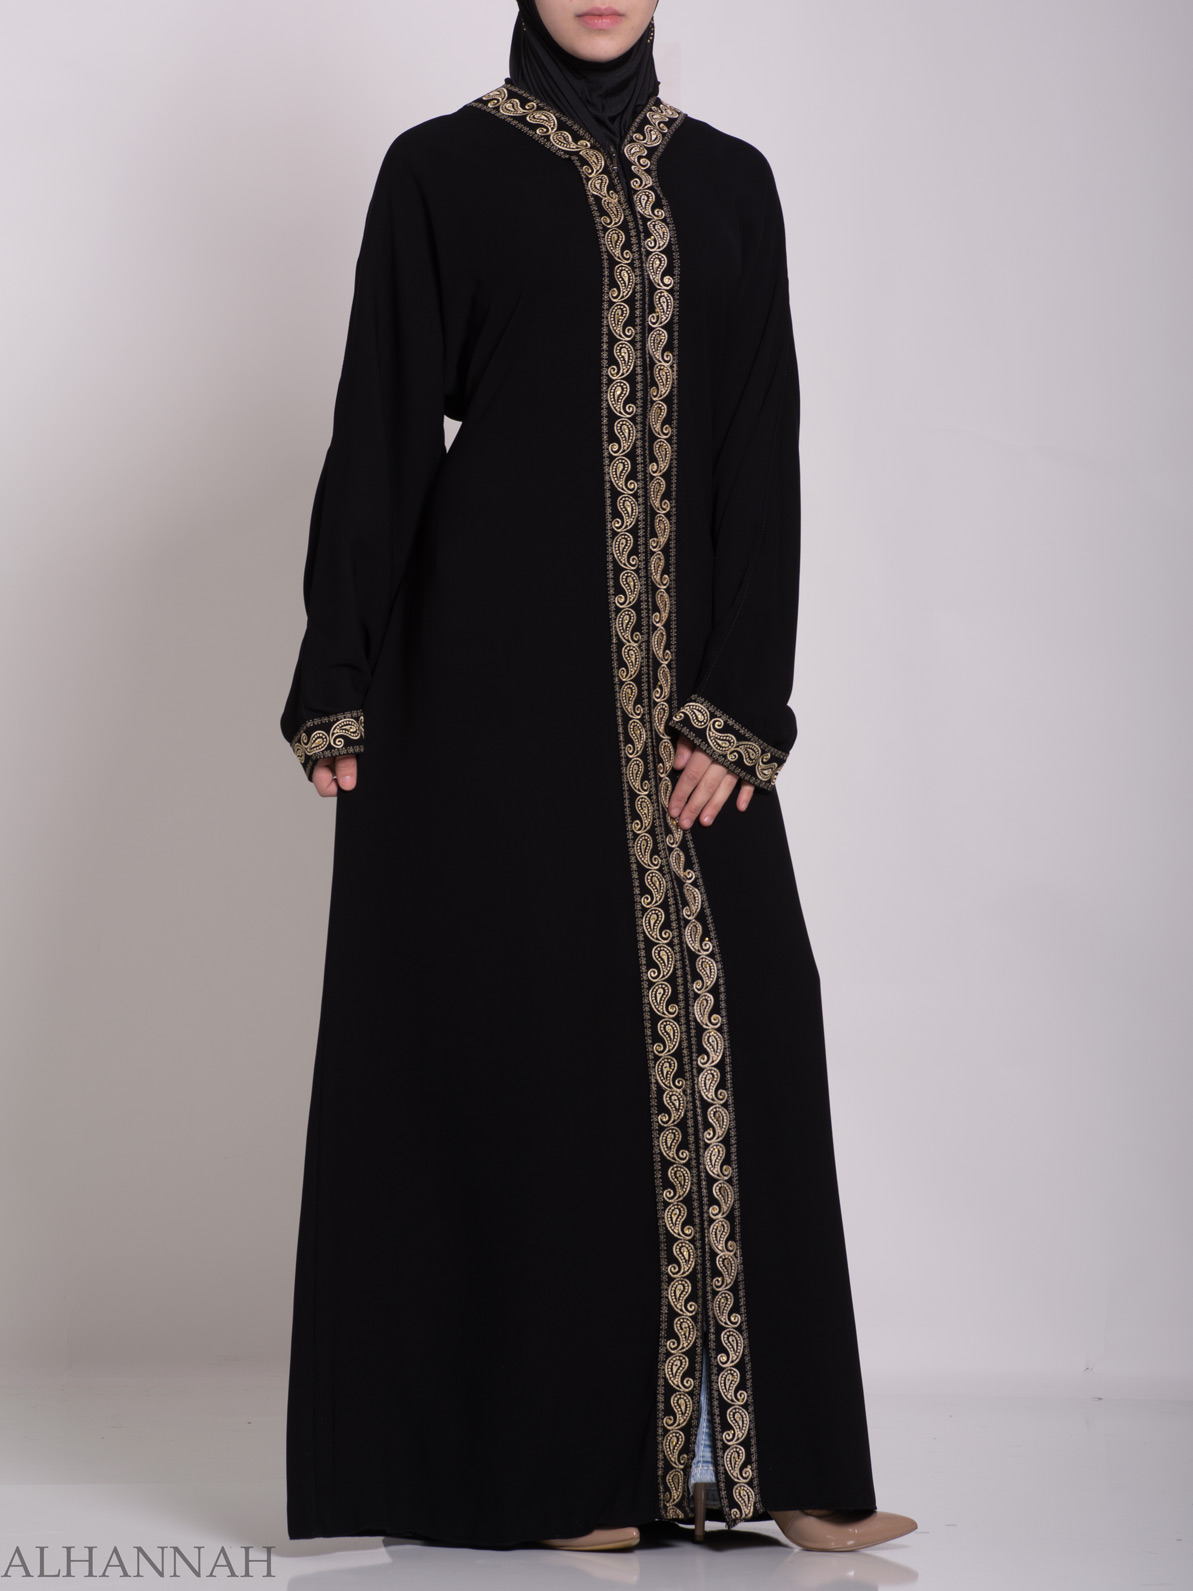 Wadad Khalije  Abaya  ab657  Alhannah Islamic Clothing